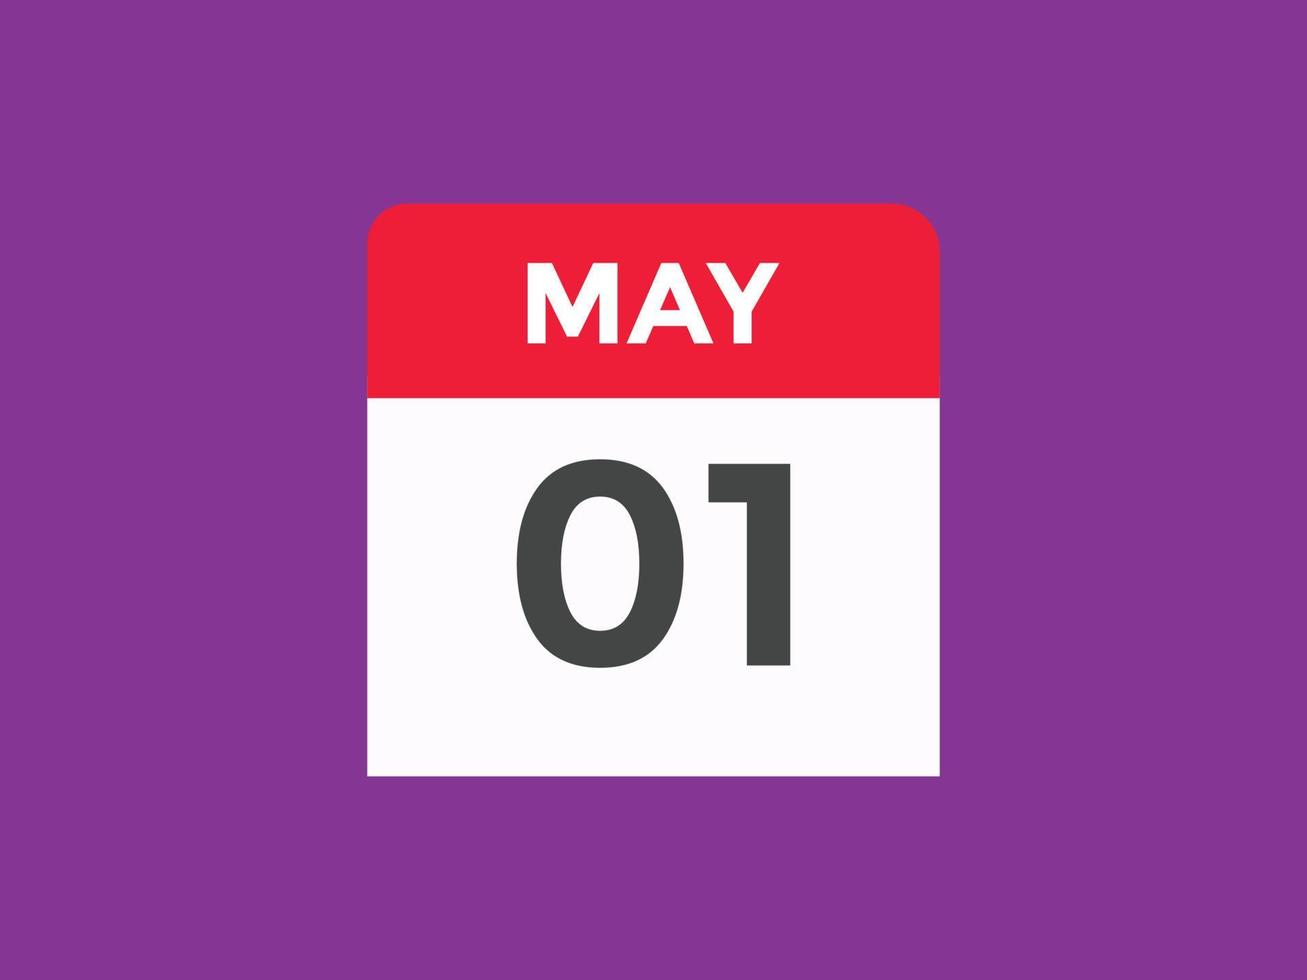 rappel du calendrier du 1er mai. Modèle d'icône de calendrier quotidien du 1er mai. modèle de conception d'icône calendrier 1er mai. illustration vectorielle vecteur